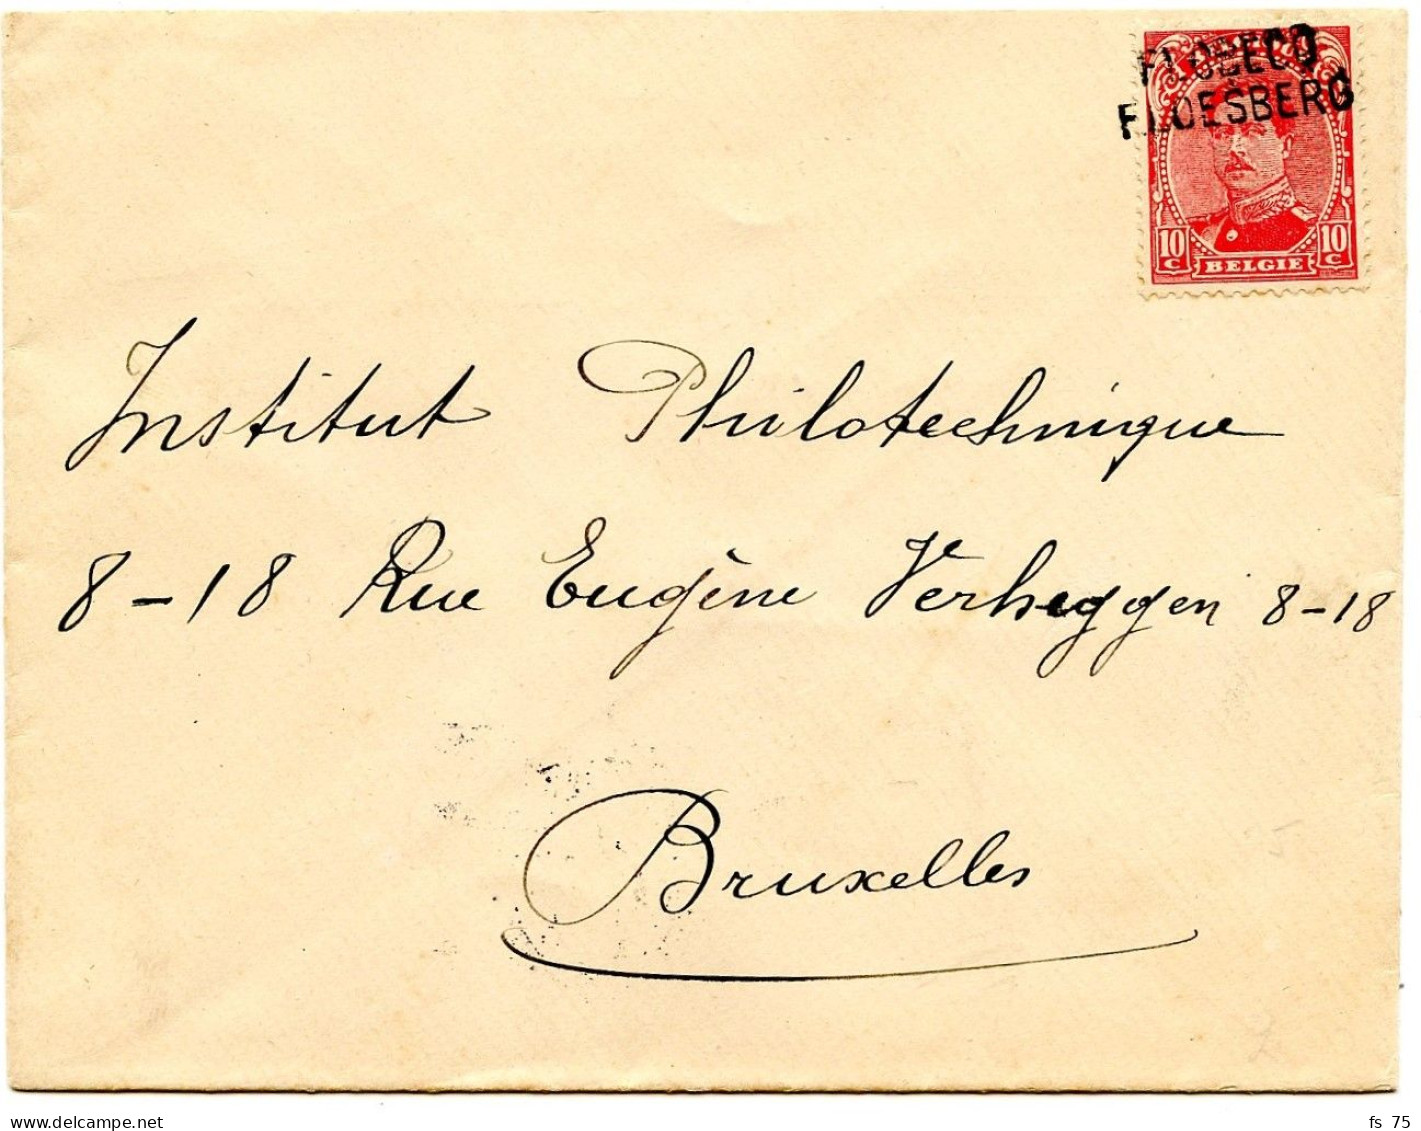 BELGIQUE - COB 138  GRIFFE BILINGUE FLOBECQ SUR LETTRE, 1919 - Briefe U. Dokumente